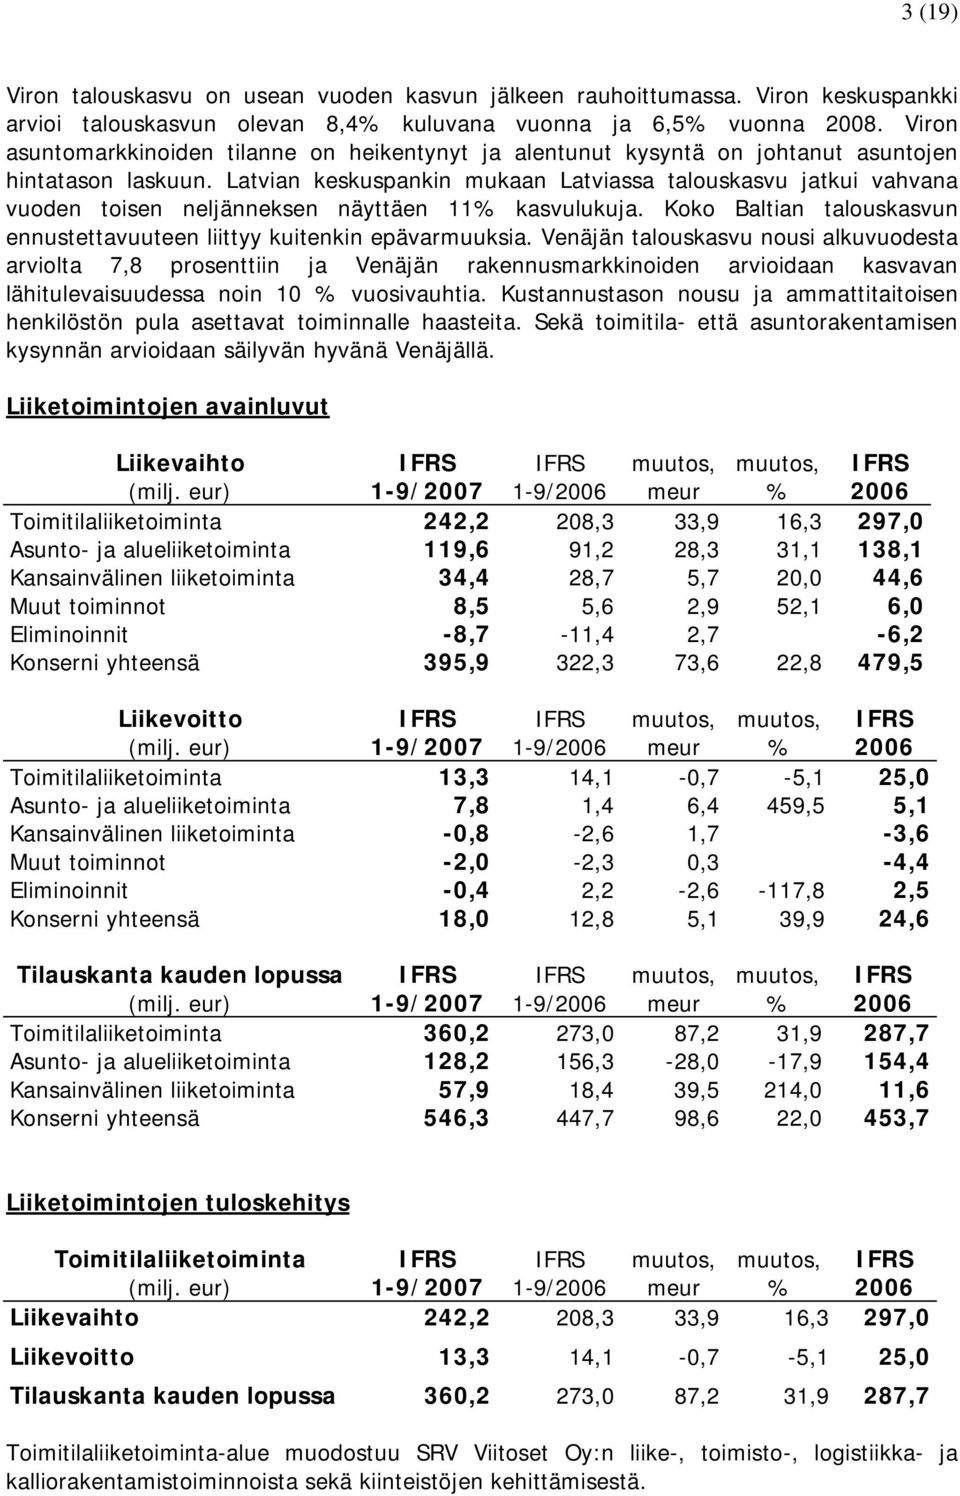 Latvian keskuspankin mukaan Latviassa talouskasvu jatkui vahvana vuoden toisen neljänneksen näyttäen 11% kasvulukuja. Koko Baltian talouskasvun ennustettavuuteen liittyy kuitenkin epävarmuuksia.